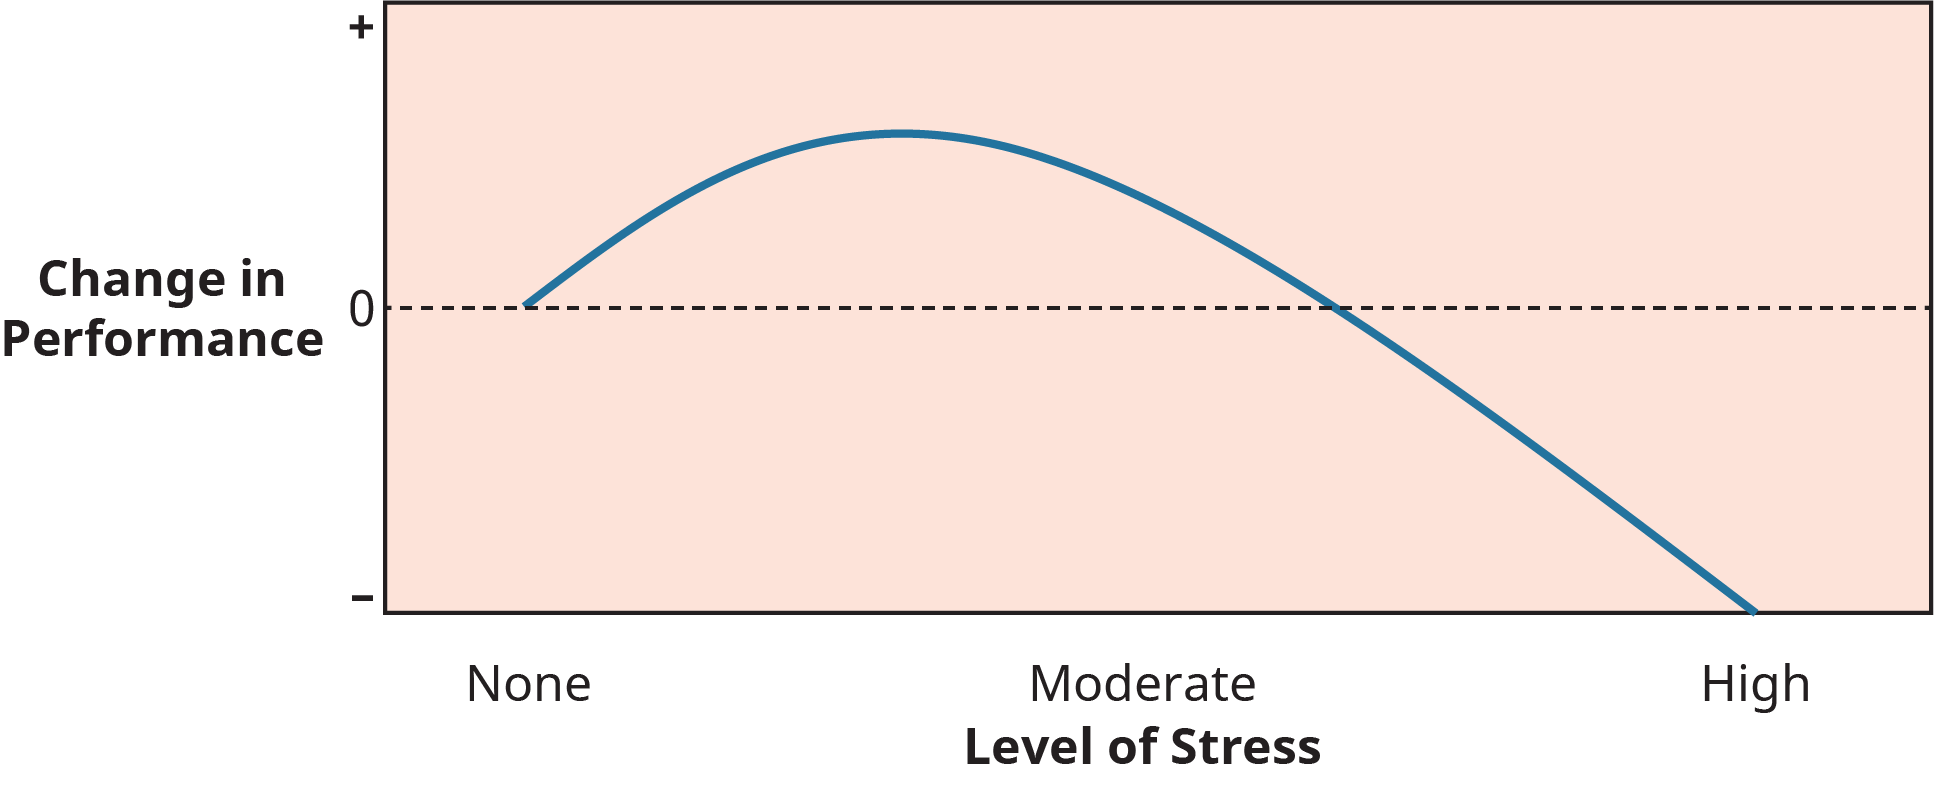 Un graphique illustre la relation entre le stress et la performance au travail.